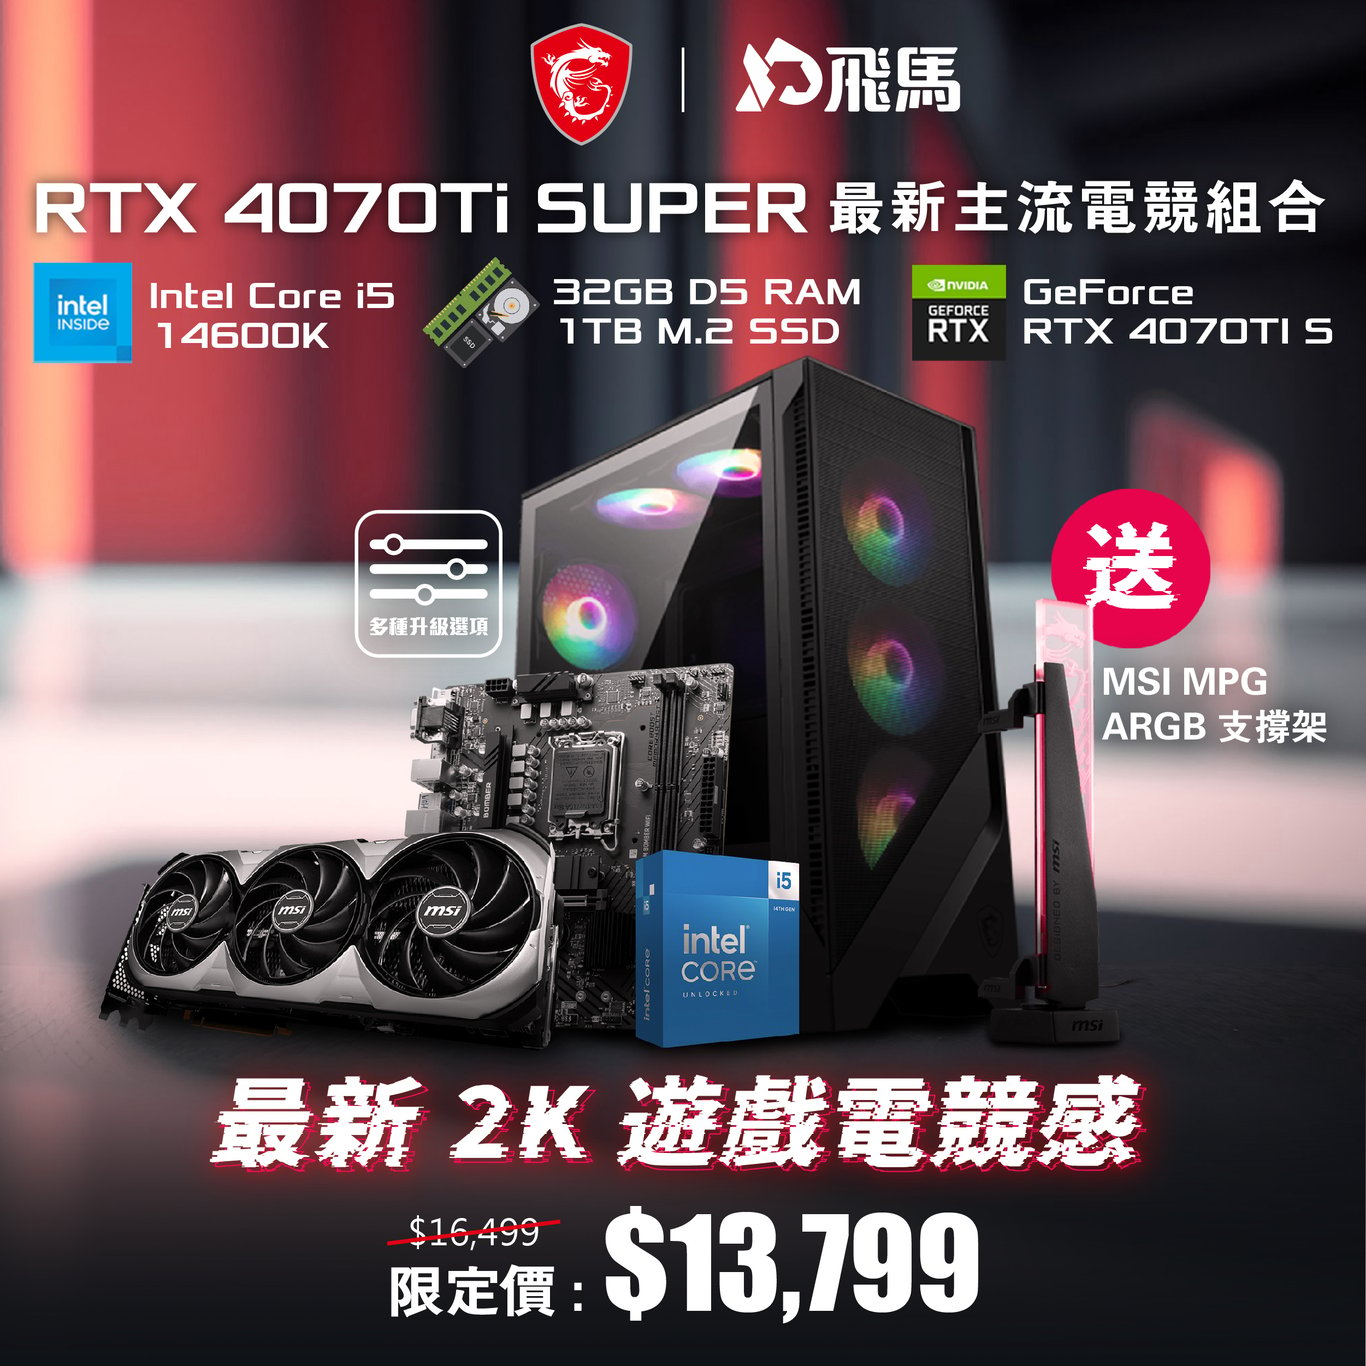 【最新 2K】RTX 4070Ti SUPER 最新主流電競組合